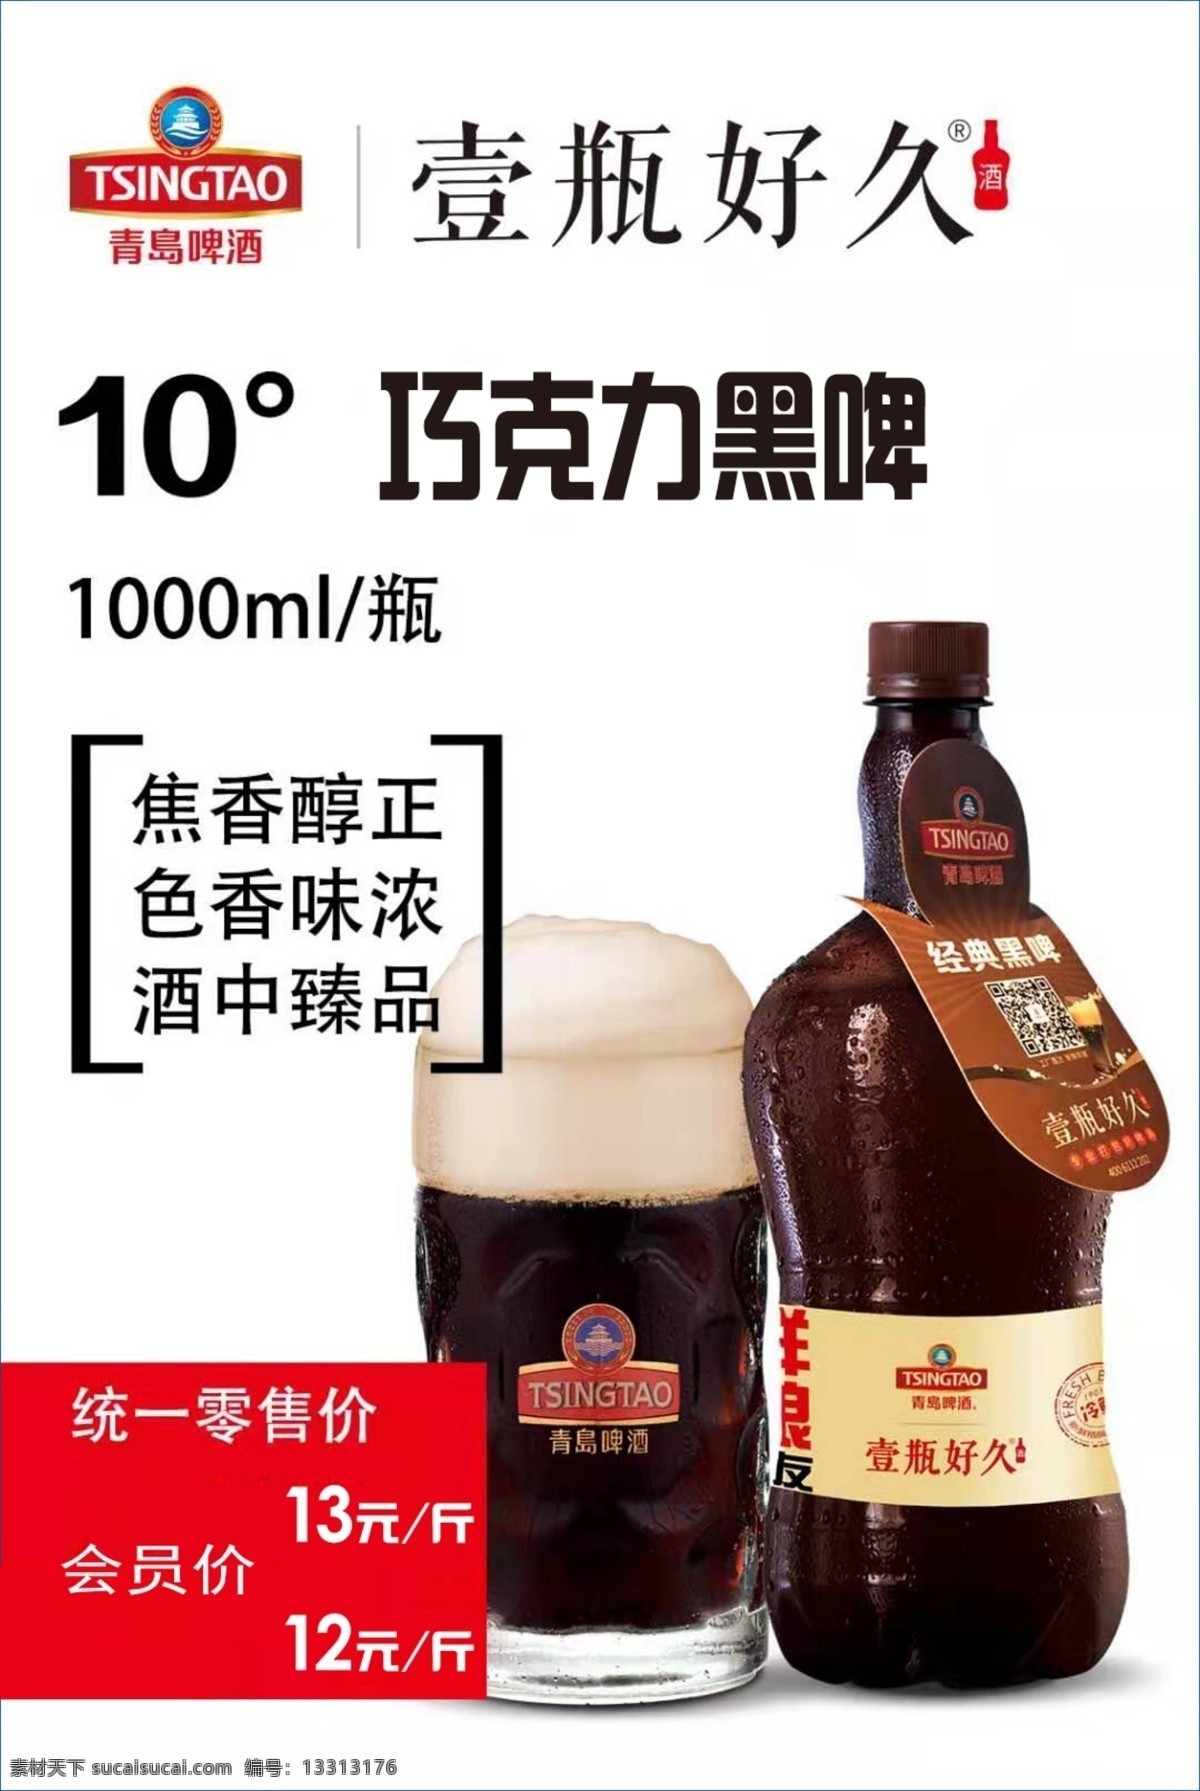 青岛啤酒 青岛 喷绘 啤酒 绿色背景 啤酒元素 黑啤 宣传单展架